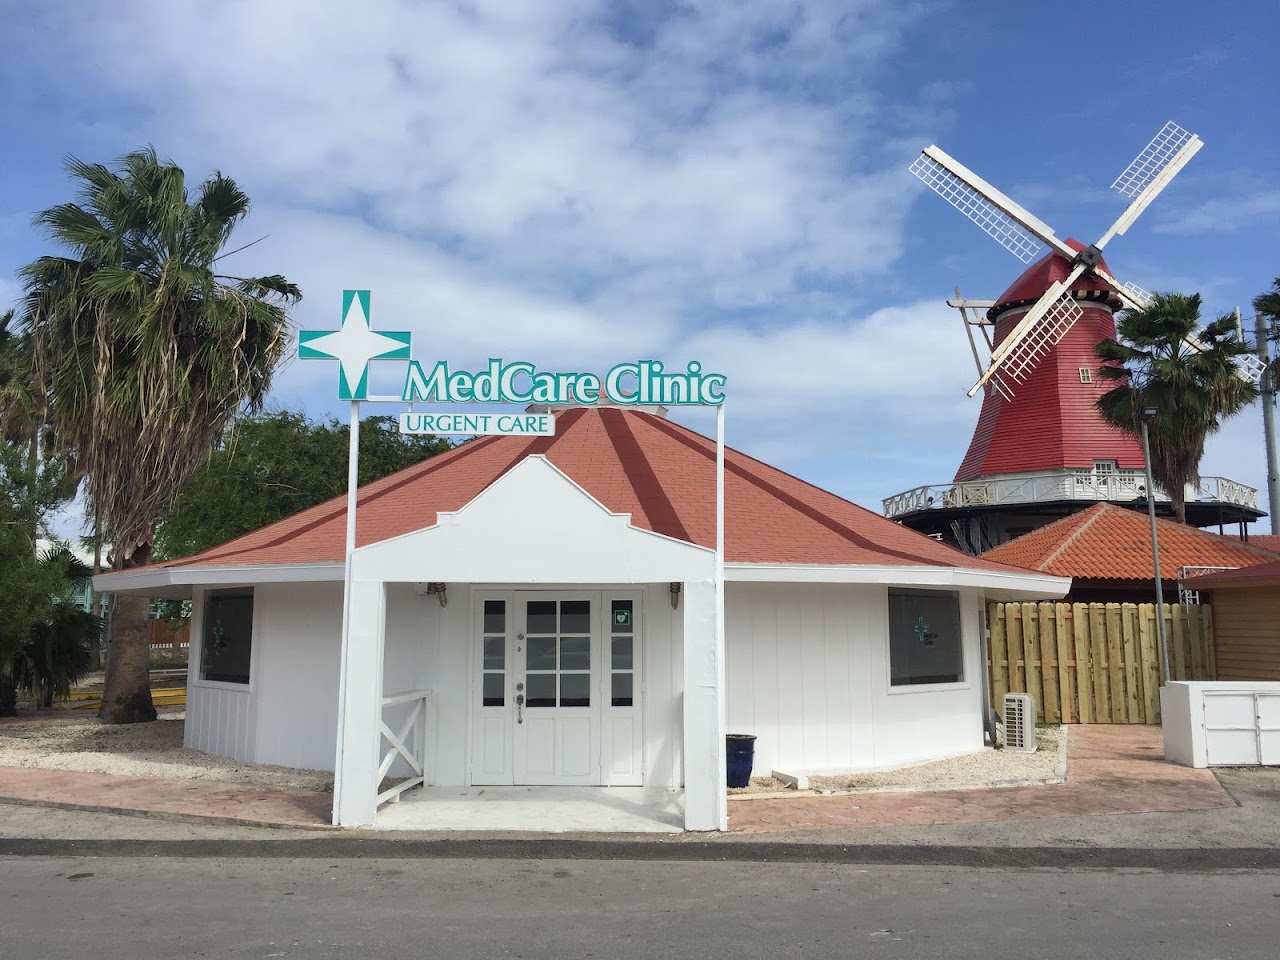 Photo of MedCare Clinic Noord COVID Testing at J.E. Irausquin Blvd 330, Noord, Aruba